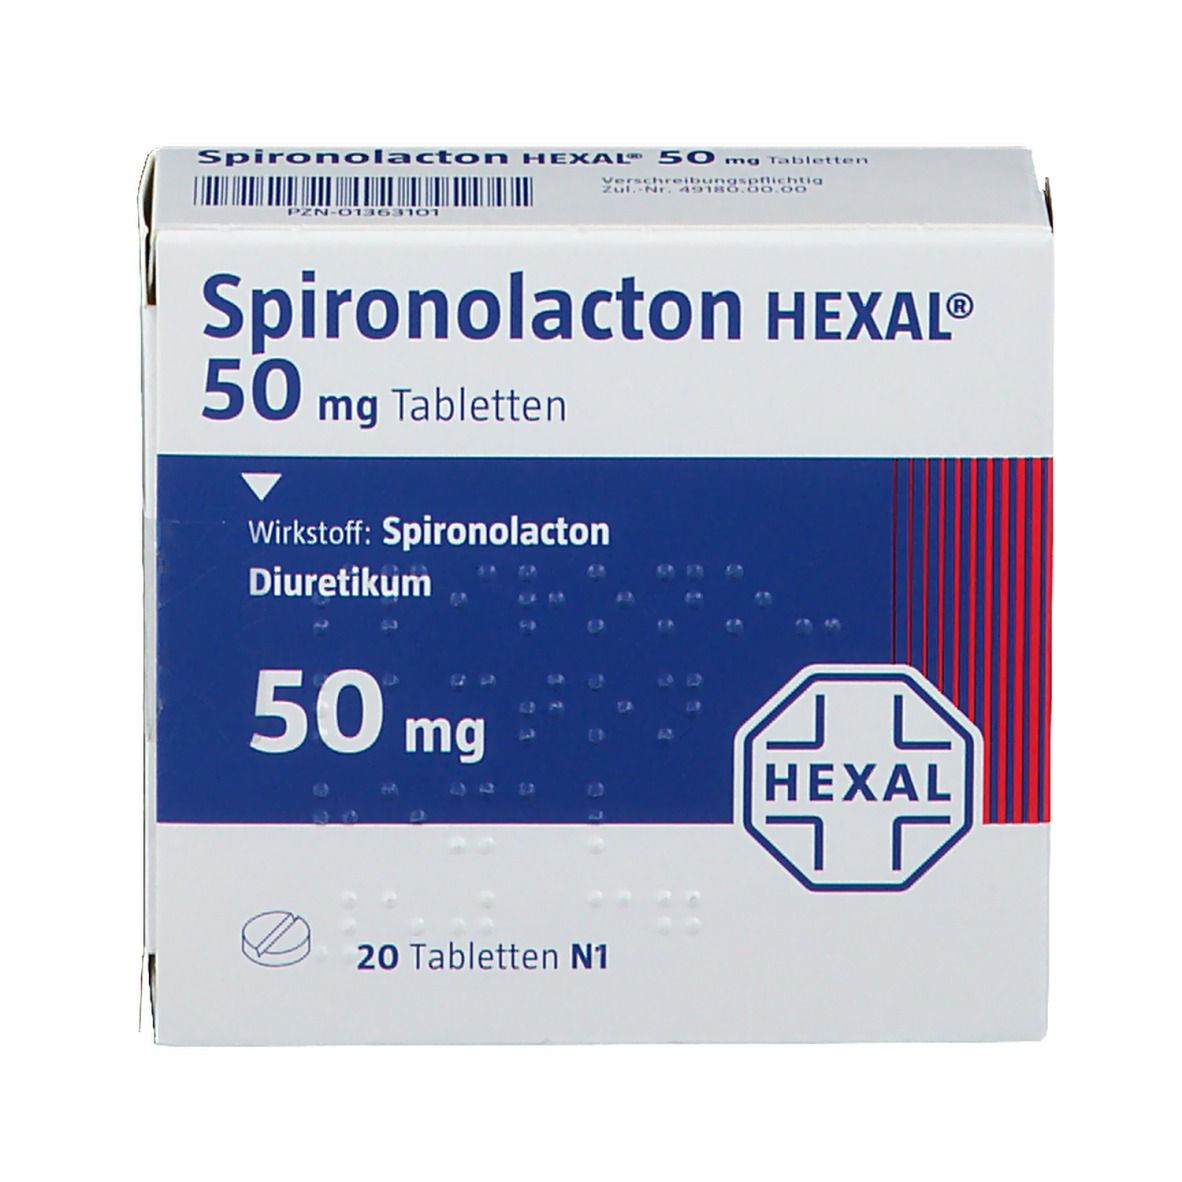 Spironolacton HEXAL® 50 mg